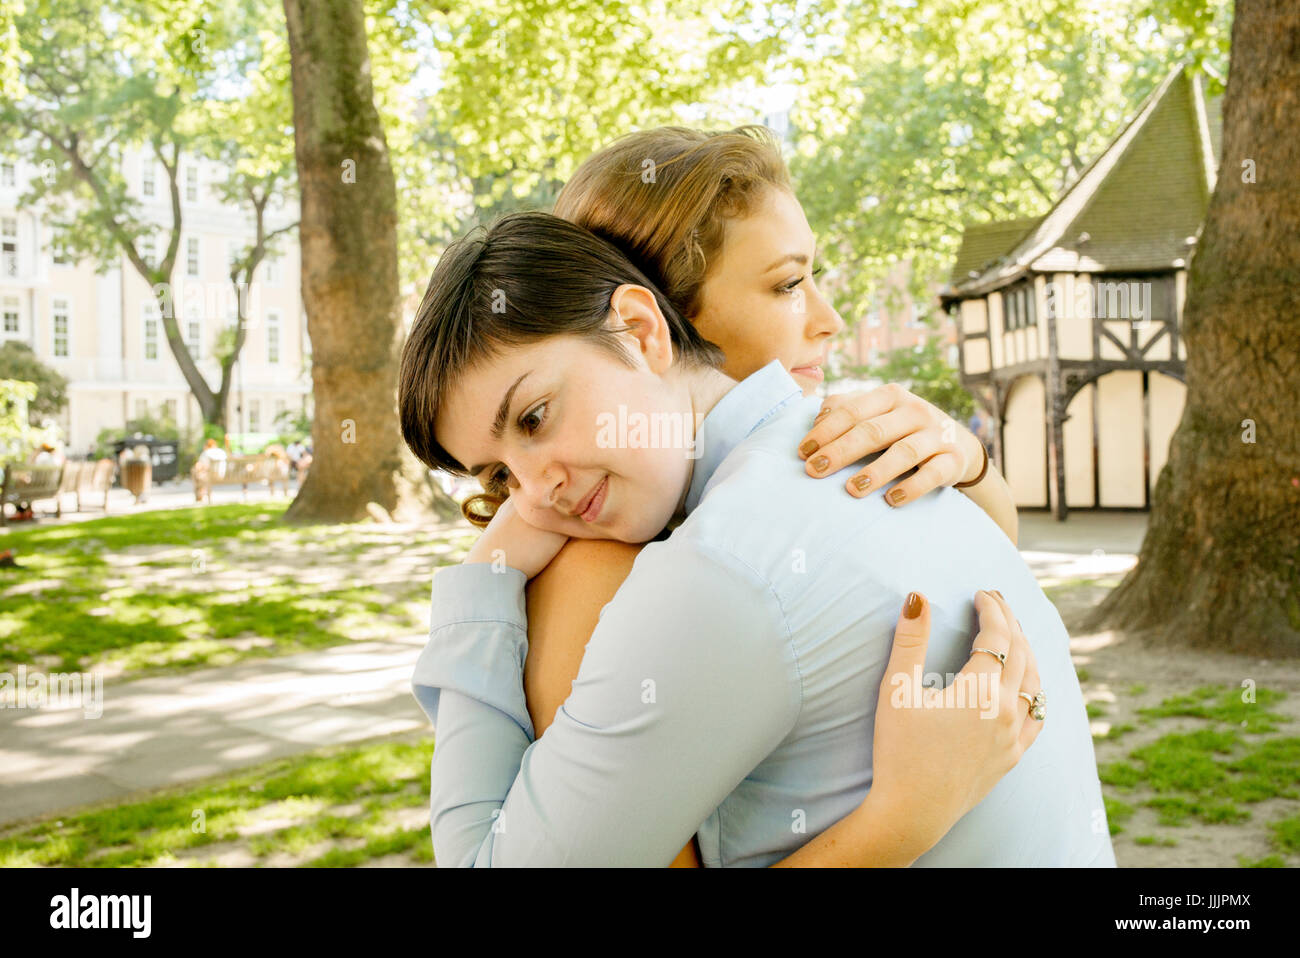 Una giovane coppia lesbica abbracciarsi nel parco. Foto Stock